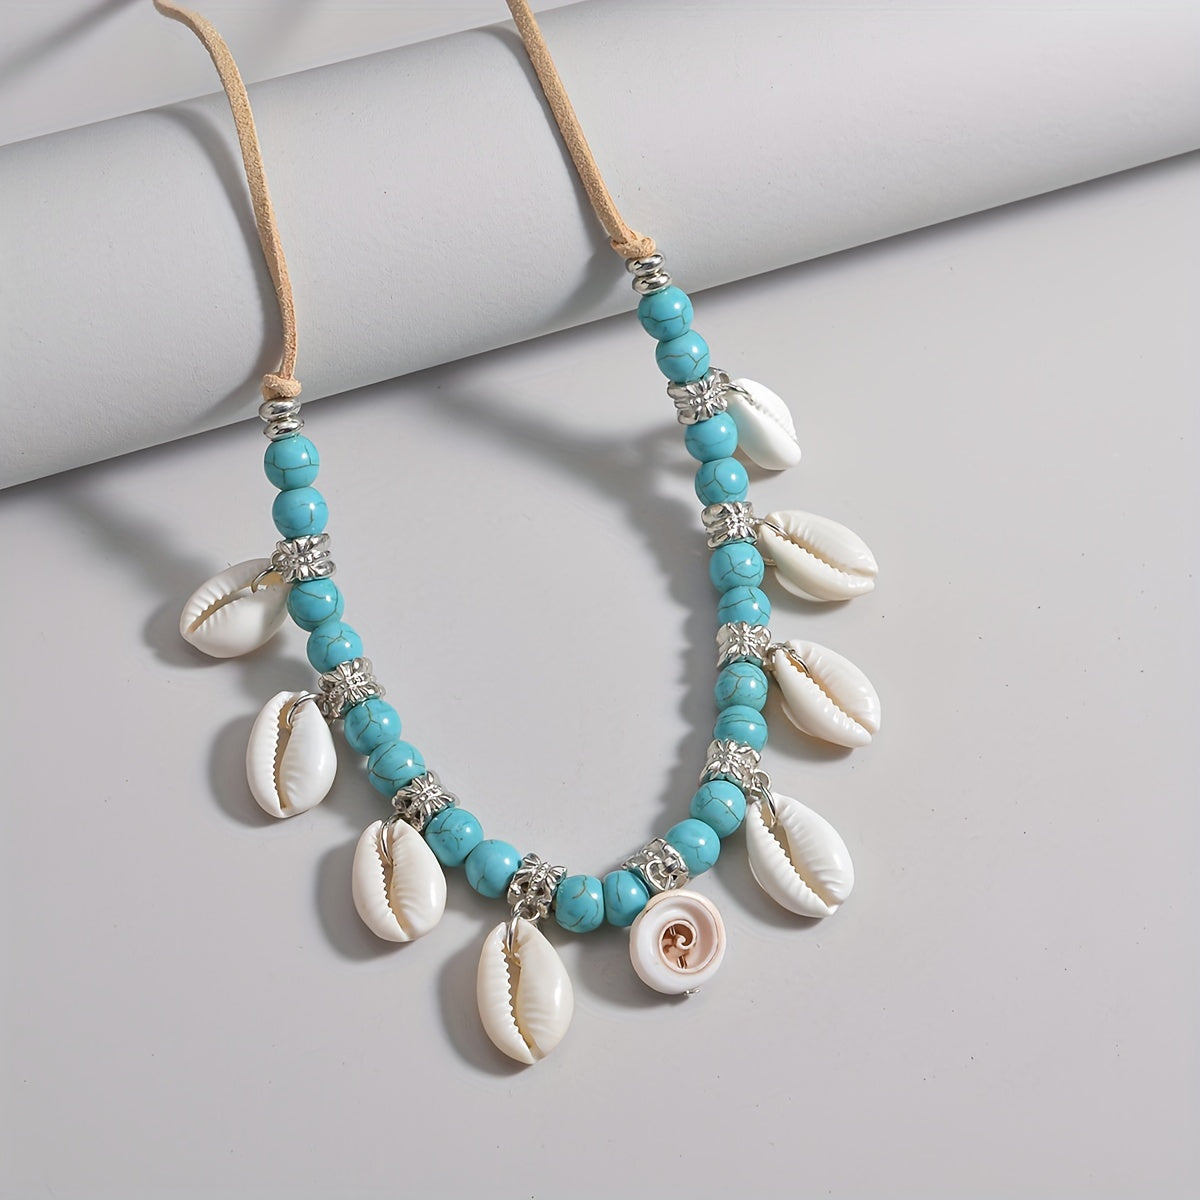 Bohemian Natural Shell Tassel Turquoise Beads Velvet Rope Women's Necklace